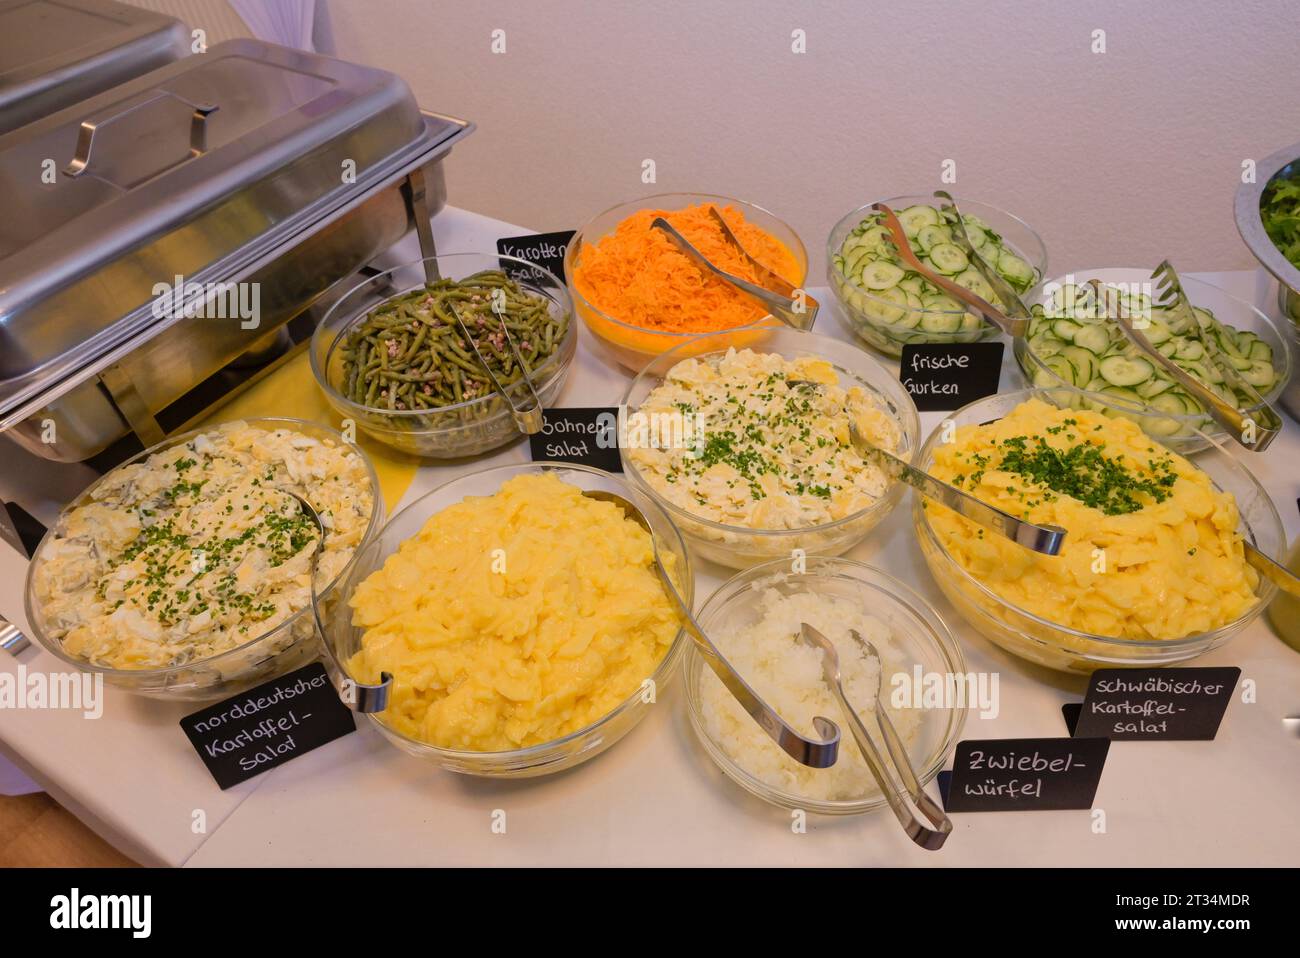 Beilagen zum Buffet, Kartoffelsalat, Deutschland Stock Photo